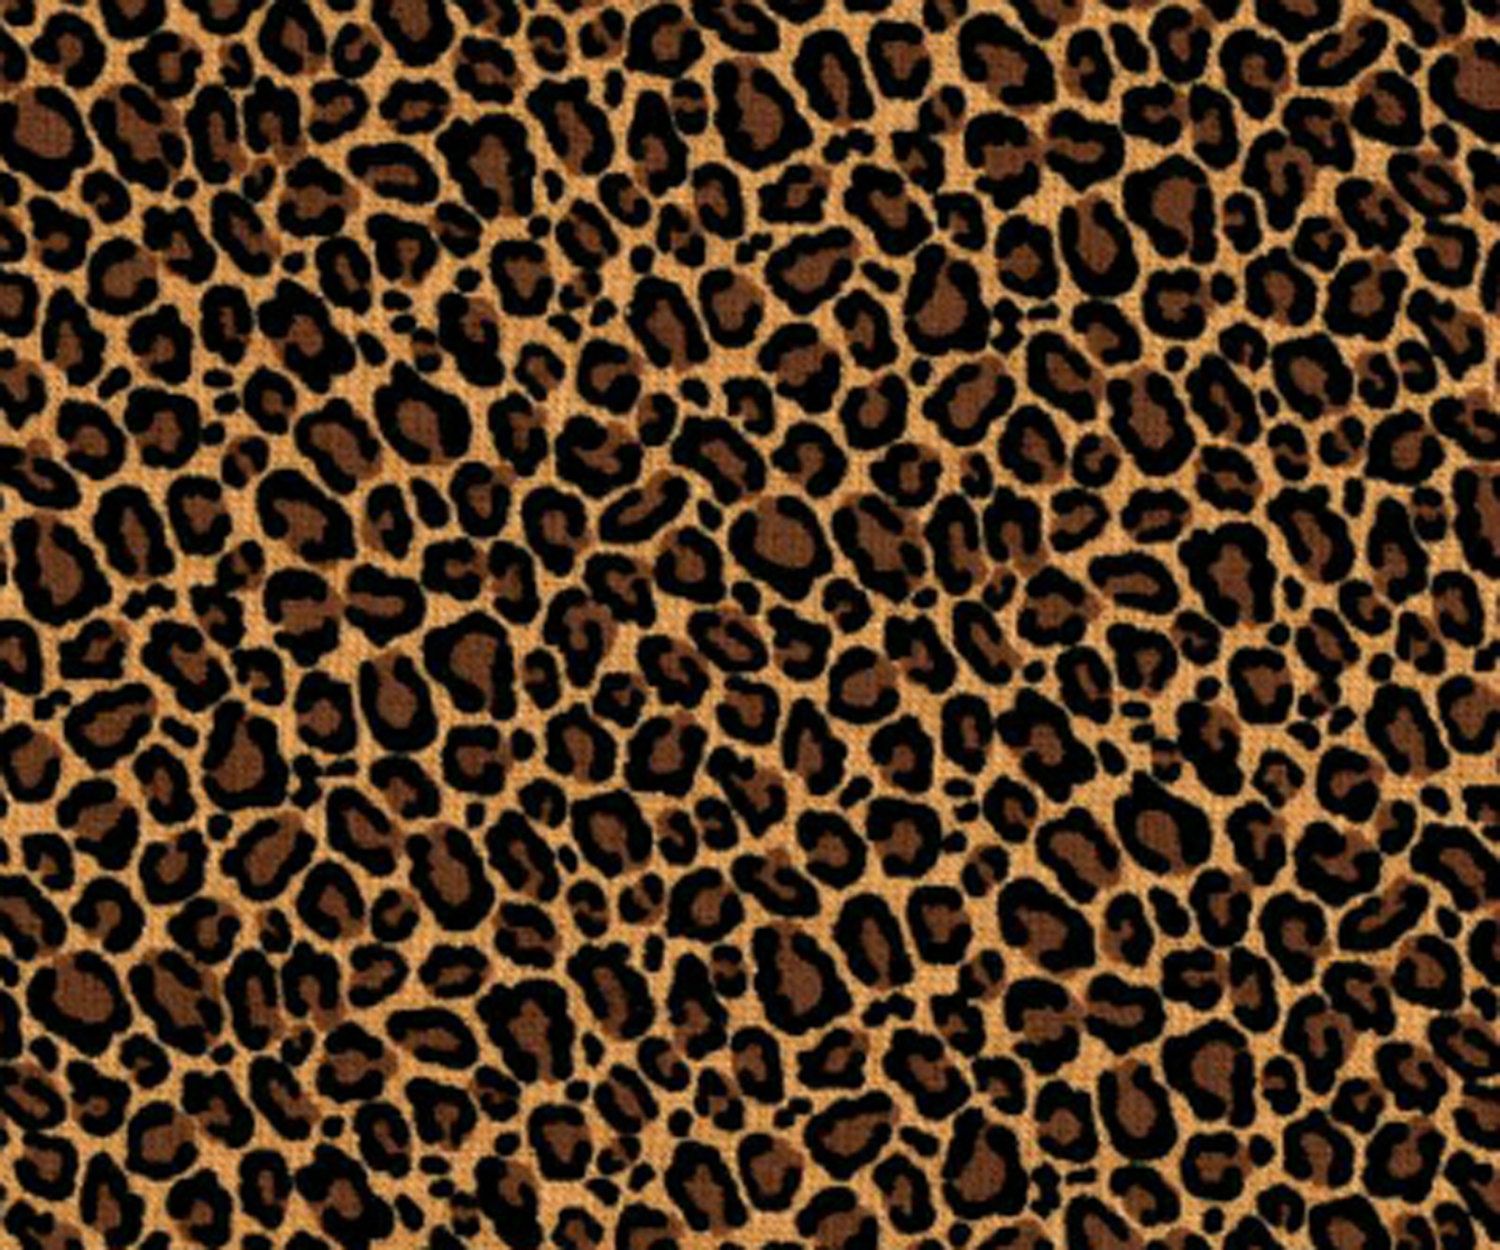 Leopard Skin wallpaper, Pattern, HQ Leopard Skin pictureK Wallpaper 2019